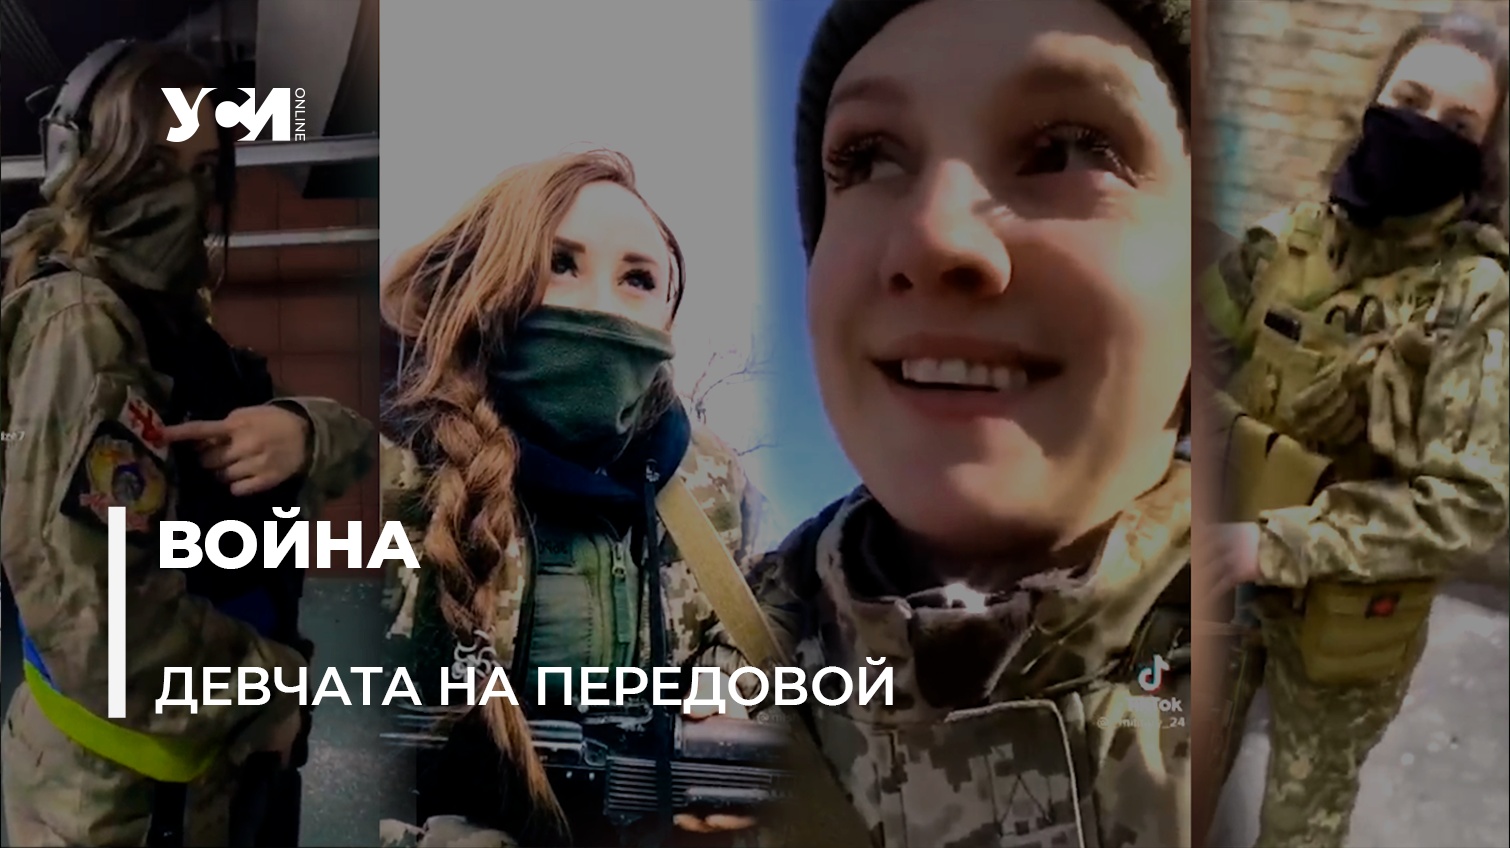 Украинские защитницы: тысячи женщин-военнослужащих 8 марта отражают агрессию врага (видео) «фото»